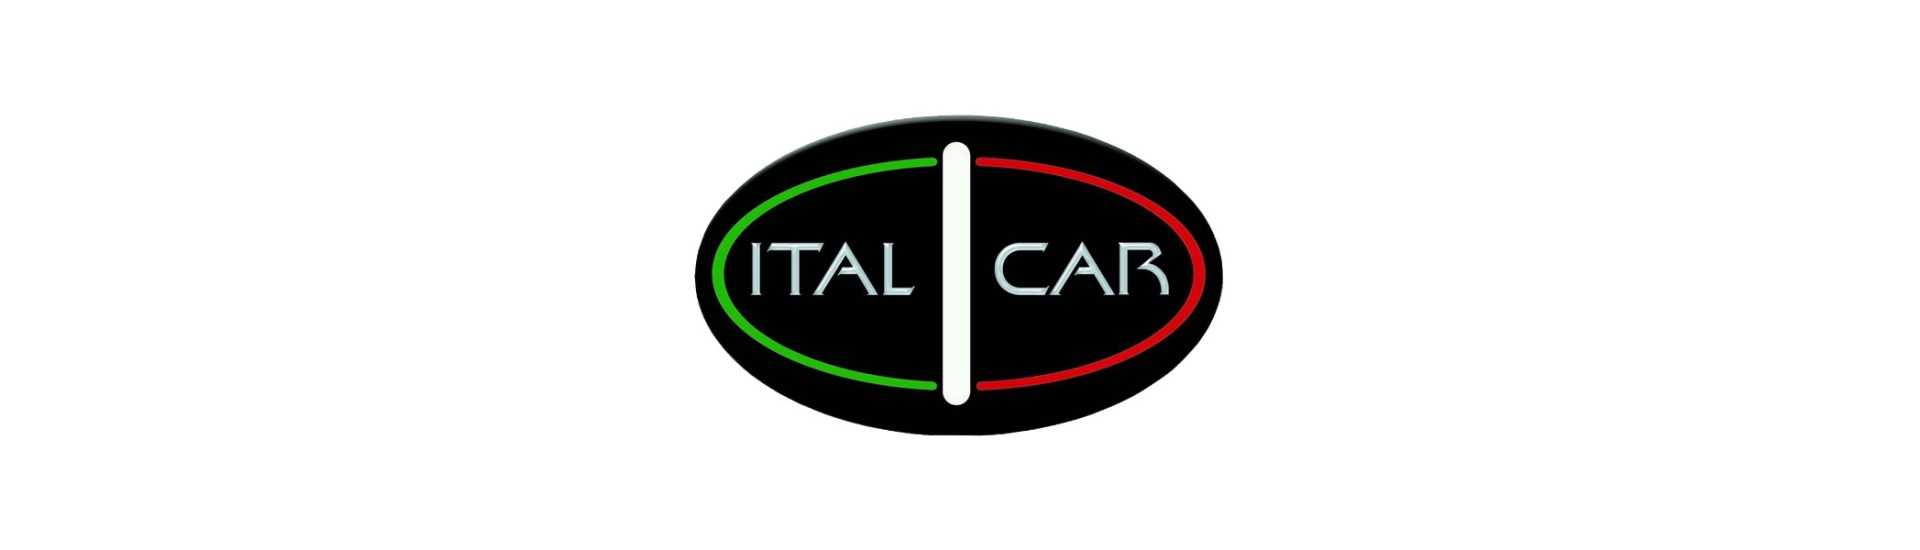 Defletor de ar ao melhor preço para carros sem licença Italcar